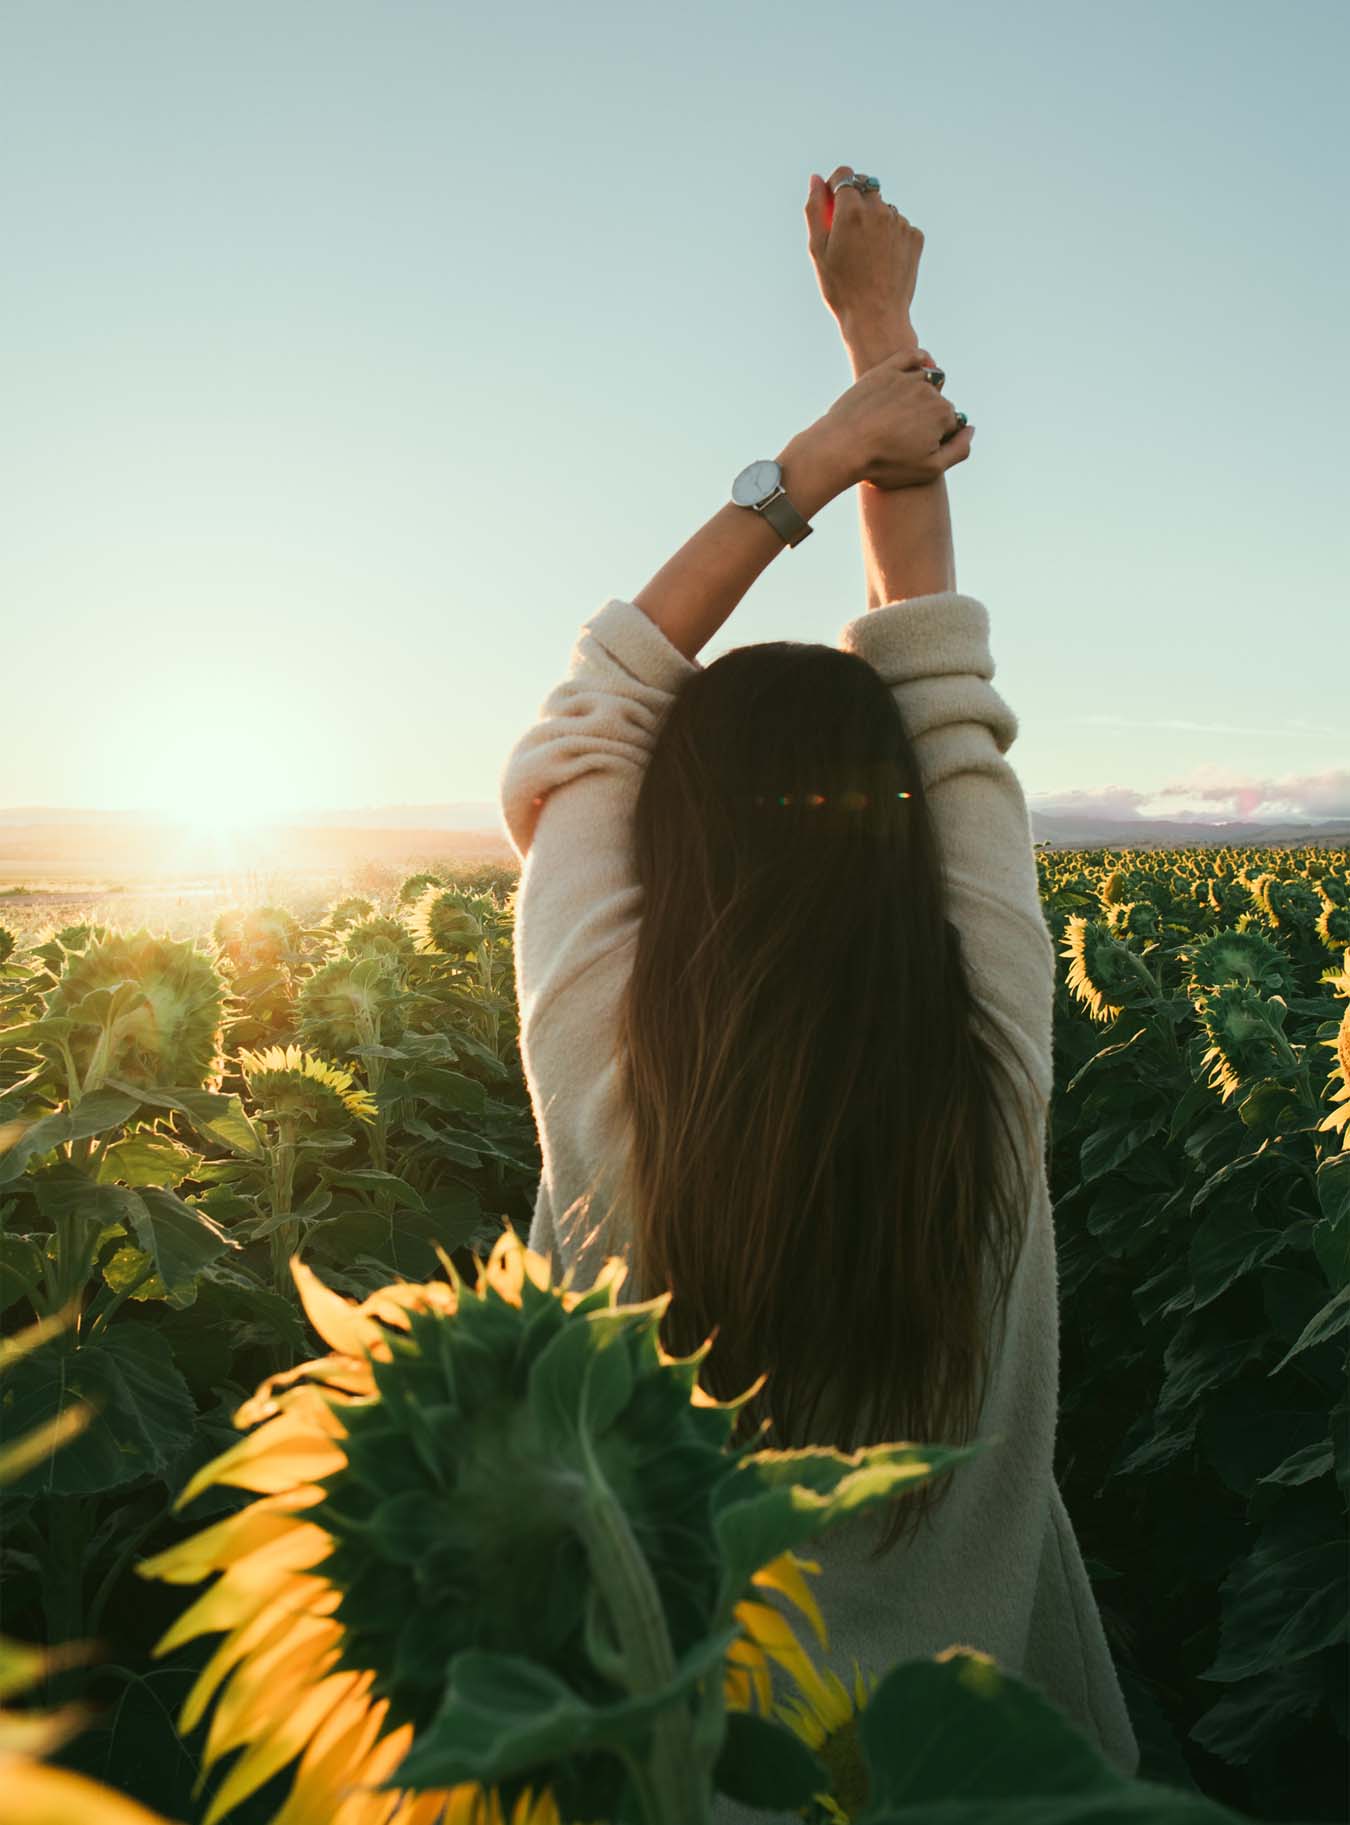 Eine junge Frau steht mit dem Rücken zu uns in einem Sonnenblumenfeld, hat die Arme gehoben und genießt die Sonne.